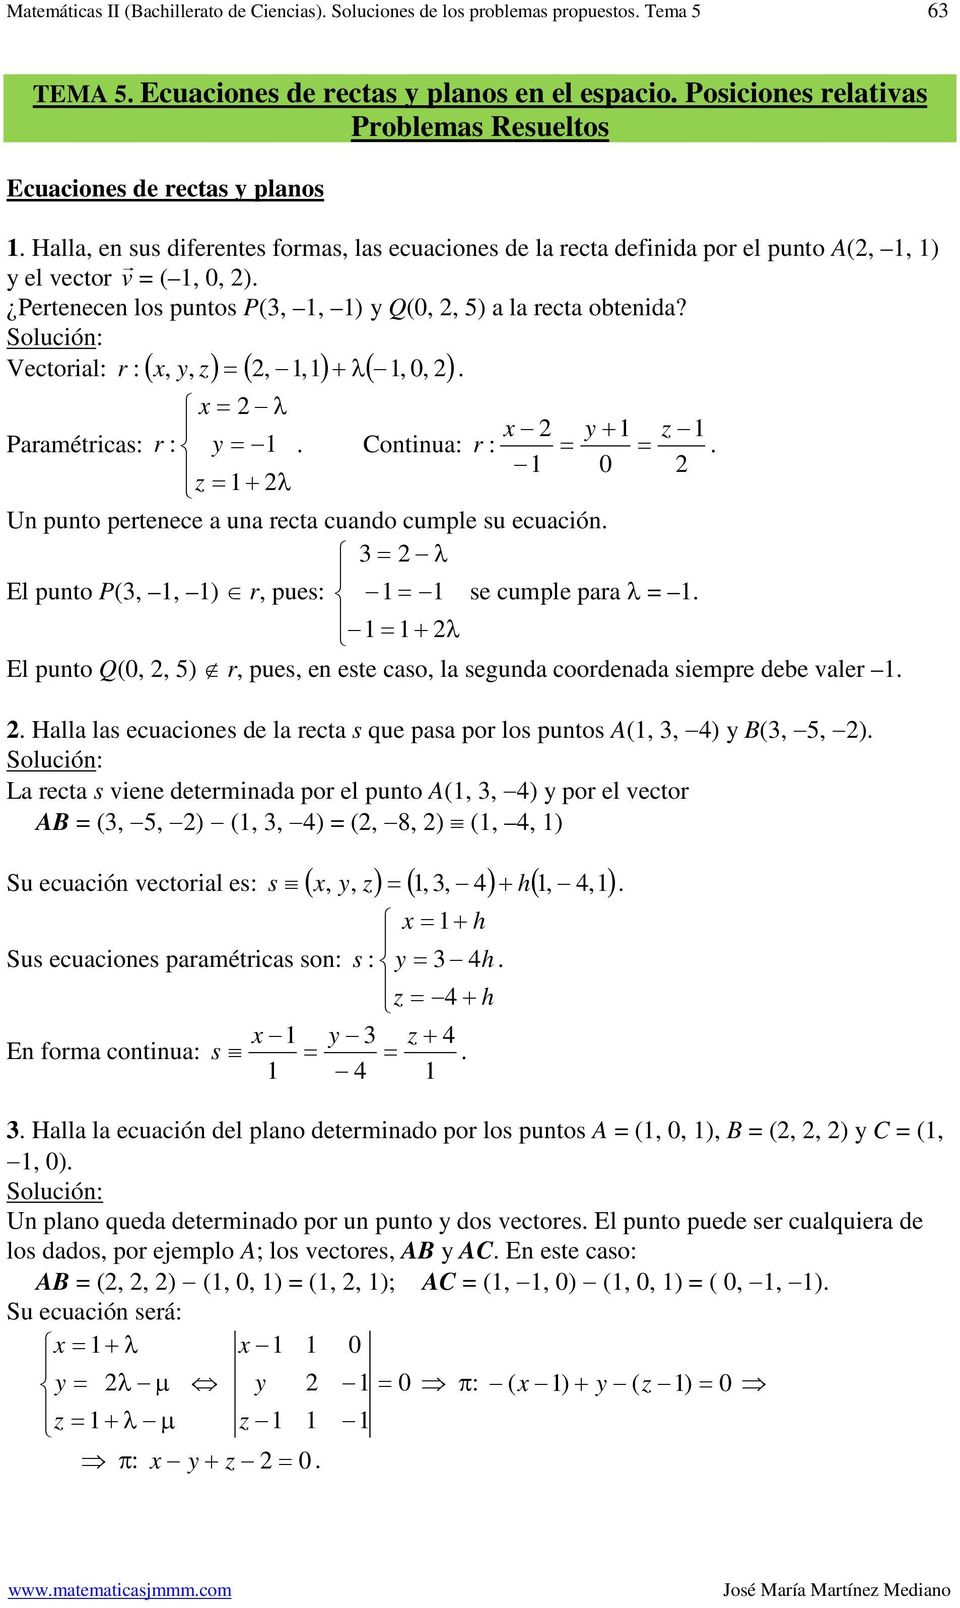 Vecoial,,,, λ,, ( ) ( ) ( ) λ Paaméicas Coninua λ Un puno peenece a una eca cuando cumple su ecuación λ l puno P(,, ), pues se cumple paa λ λ l puno Q(,, ), pues, en ese caso, la segunda coodenada